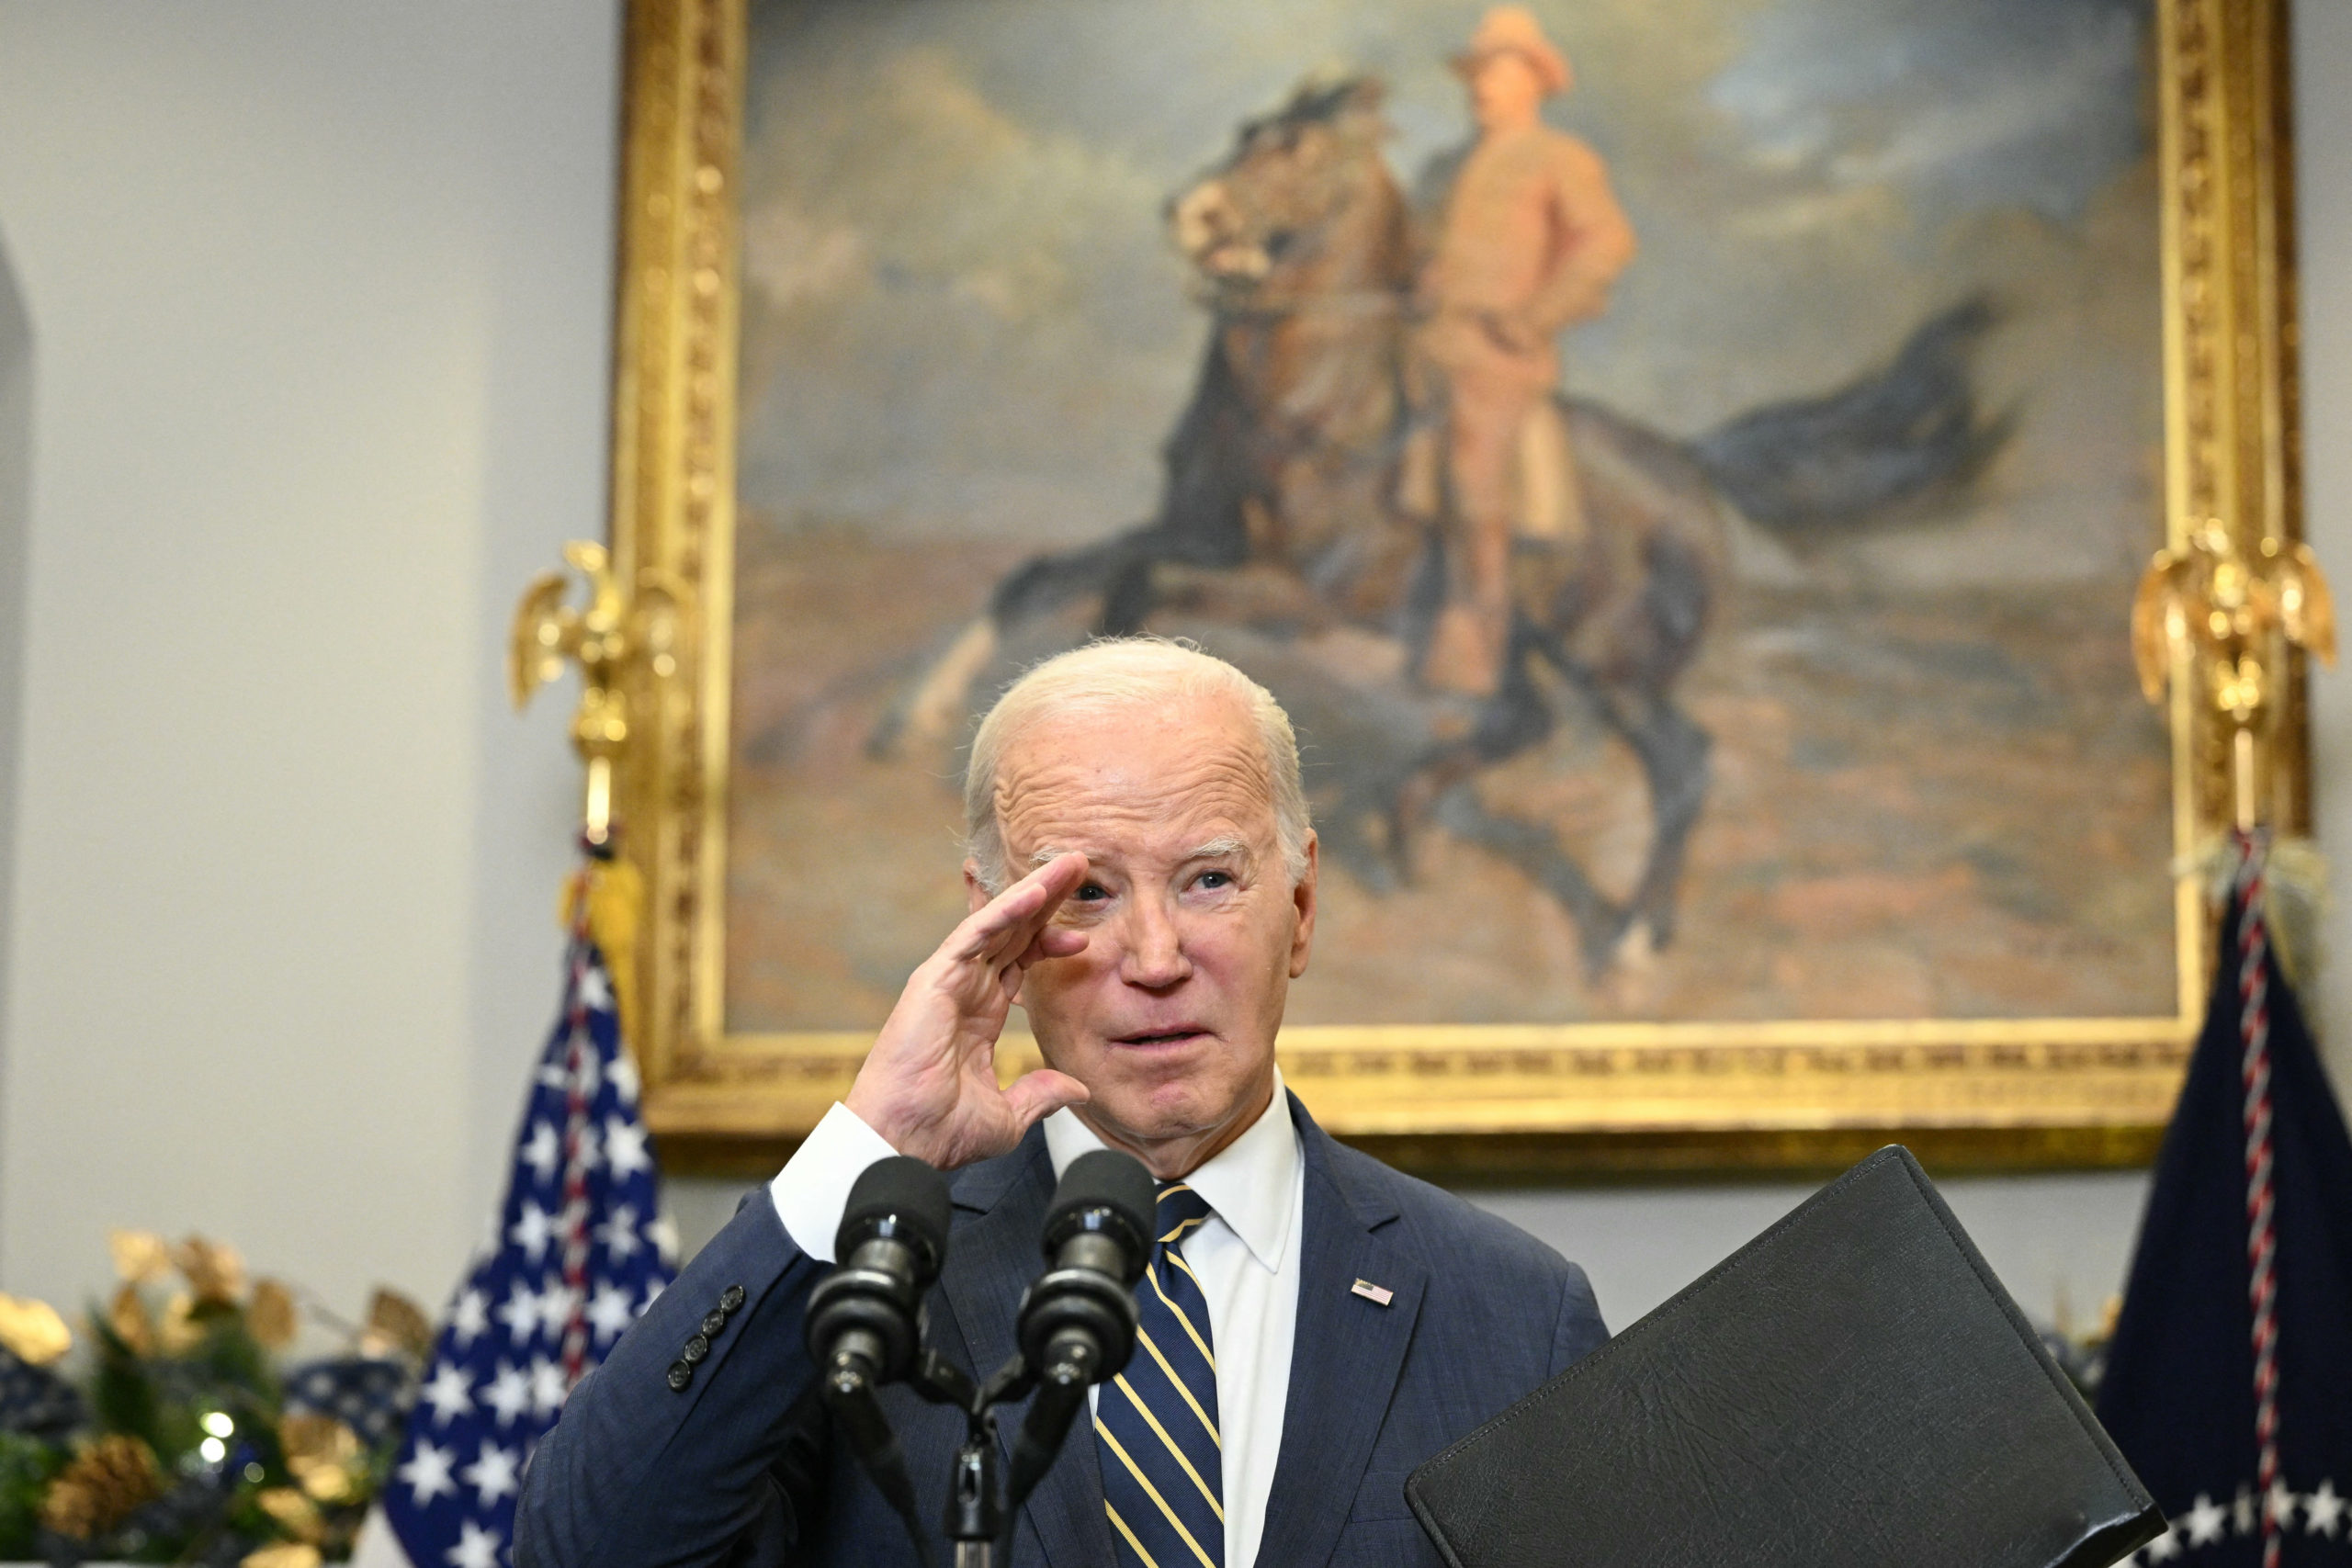 Biden hazugságokra épülő eljárásnak tartja az ellene megszavazott impeachmentindítási vizsgálatot